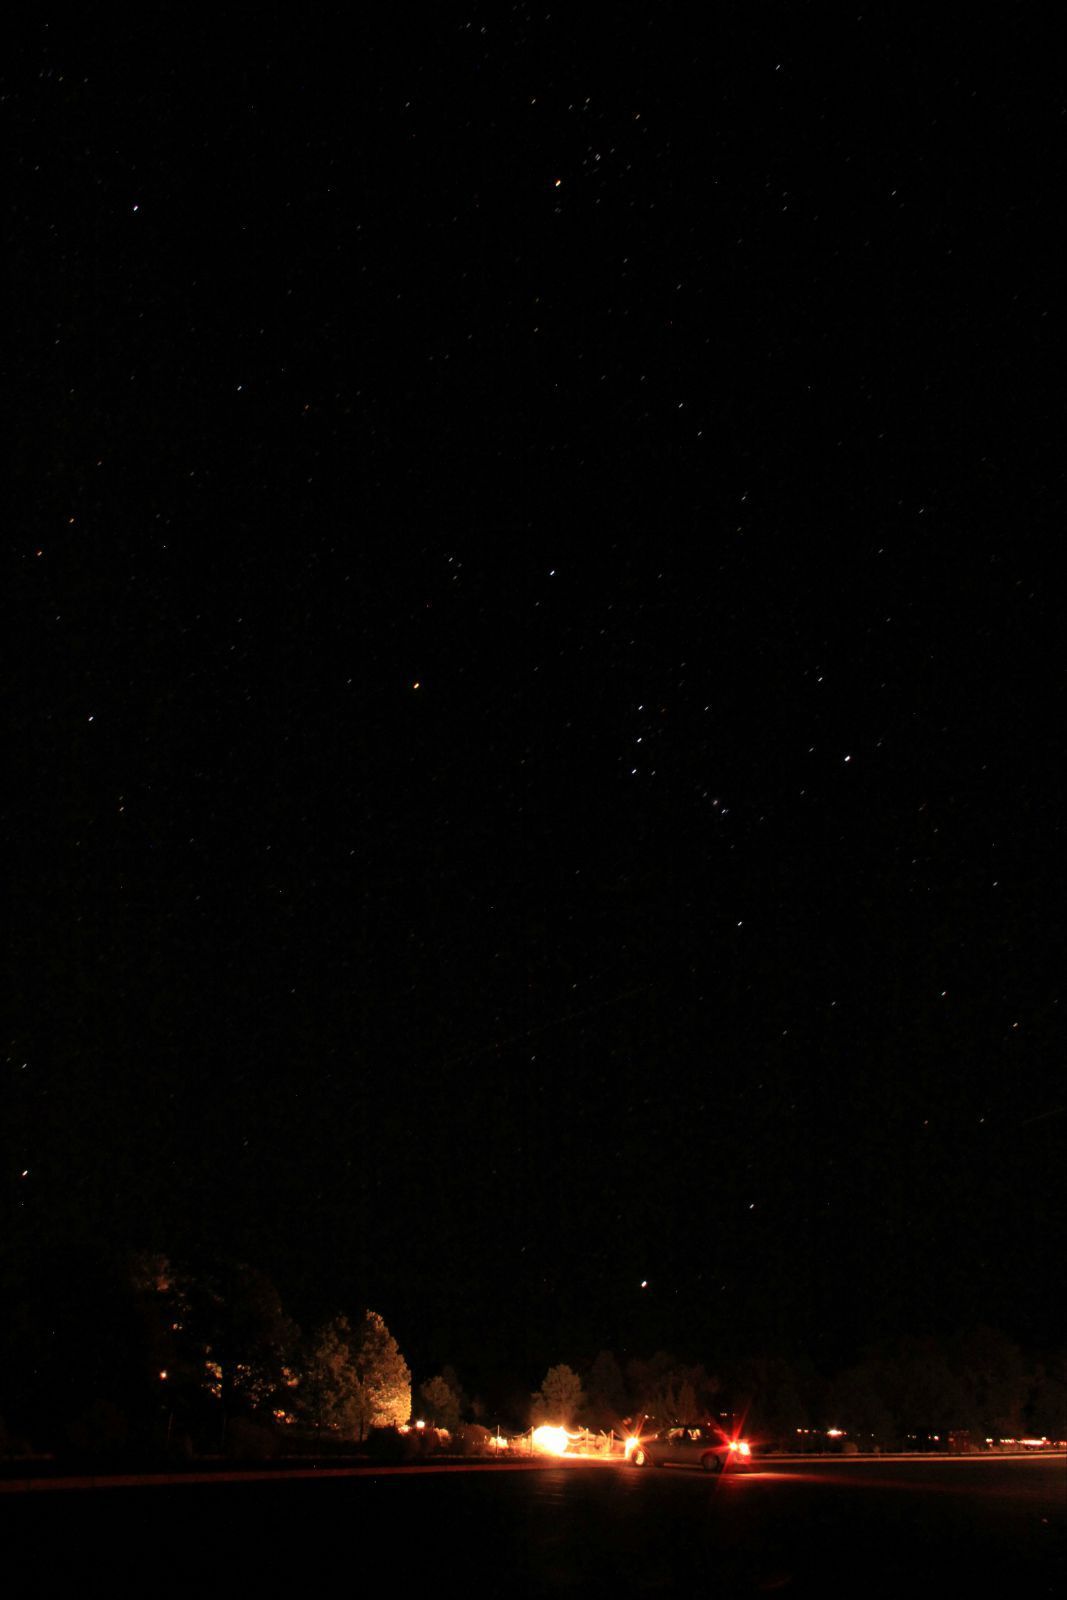 夜晚的星空格外美丽啊!感谢小伙伴的照片tat~~~ 大峡谷国家公园